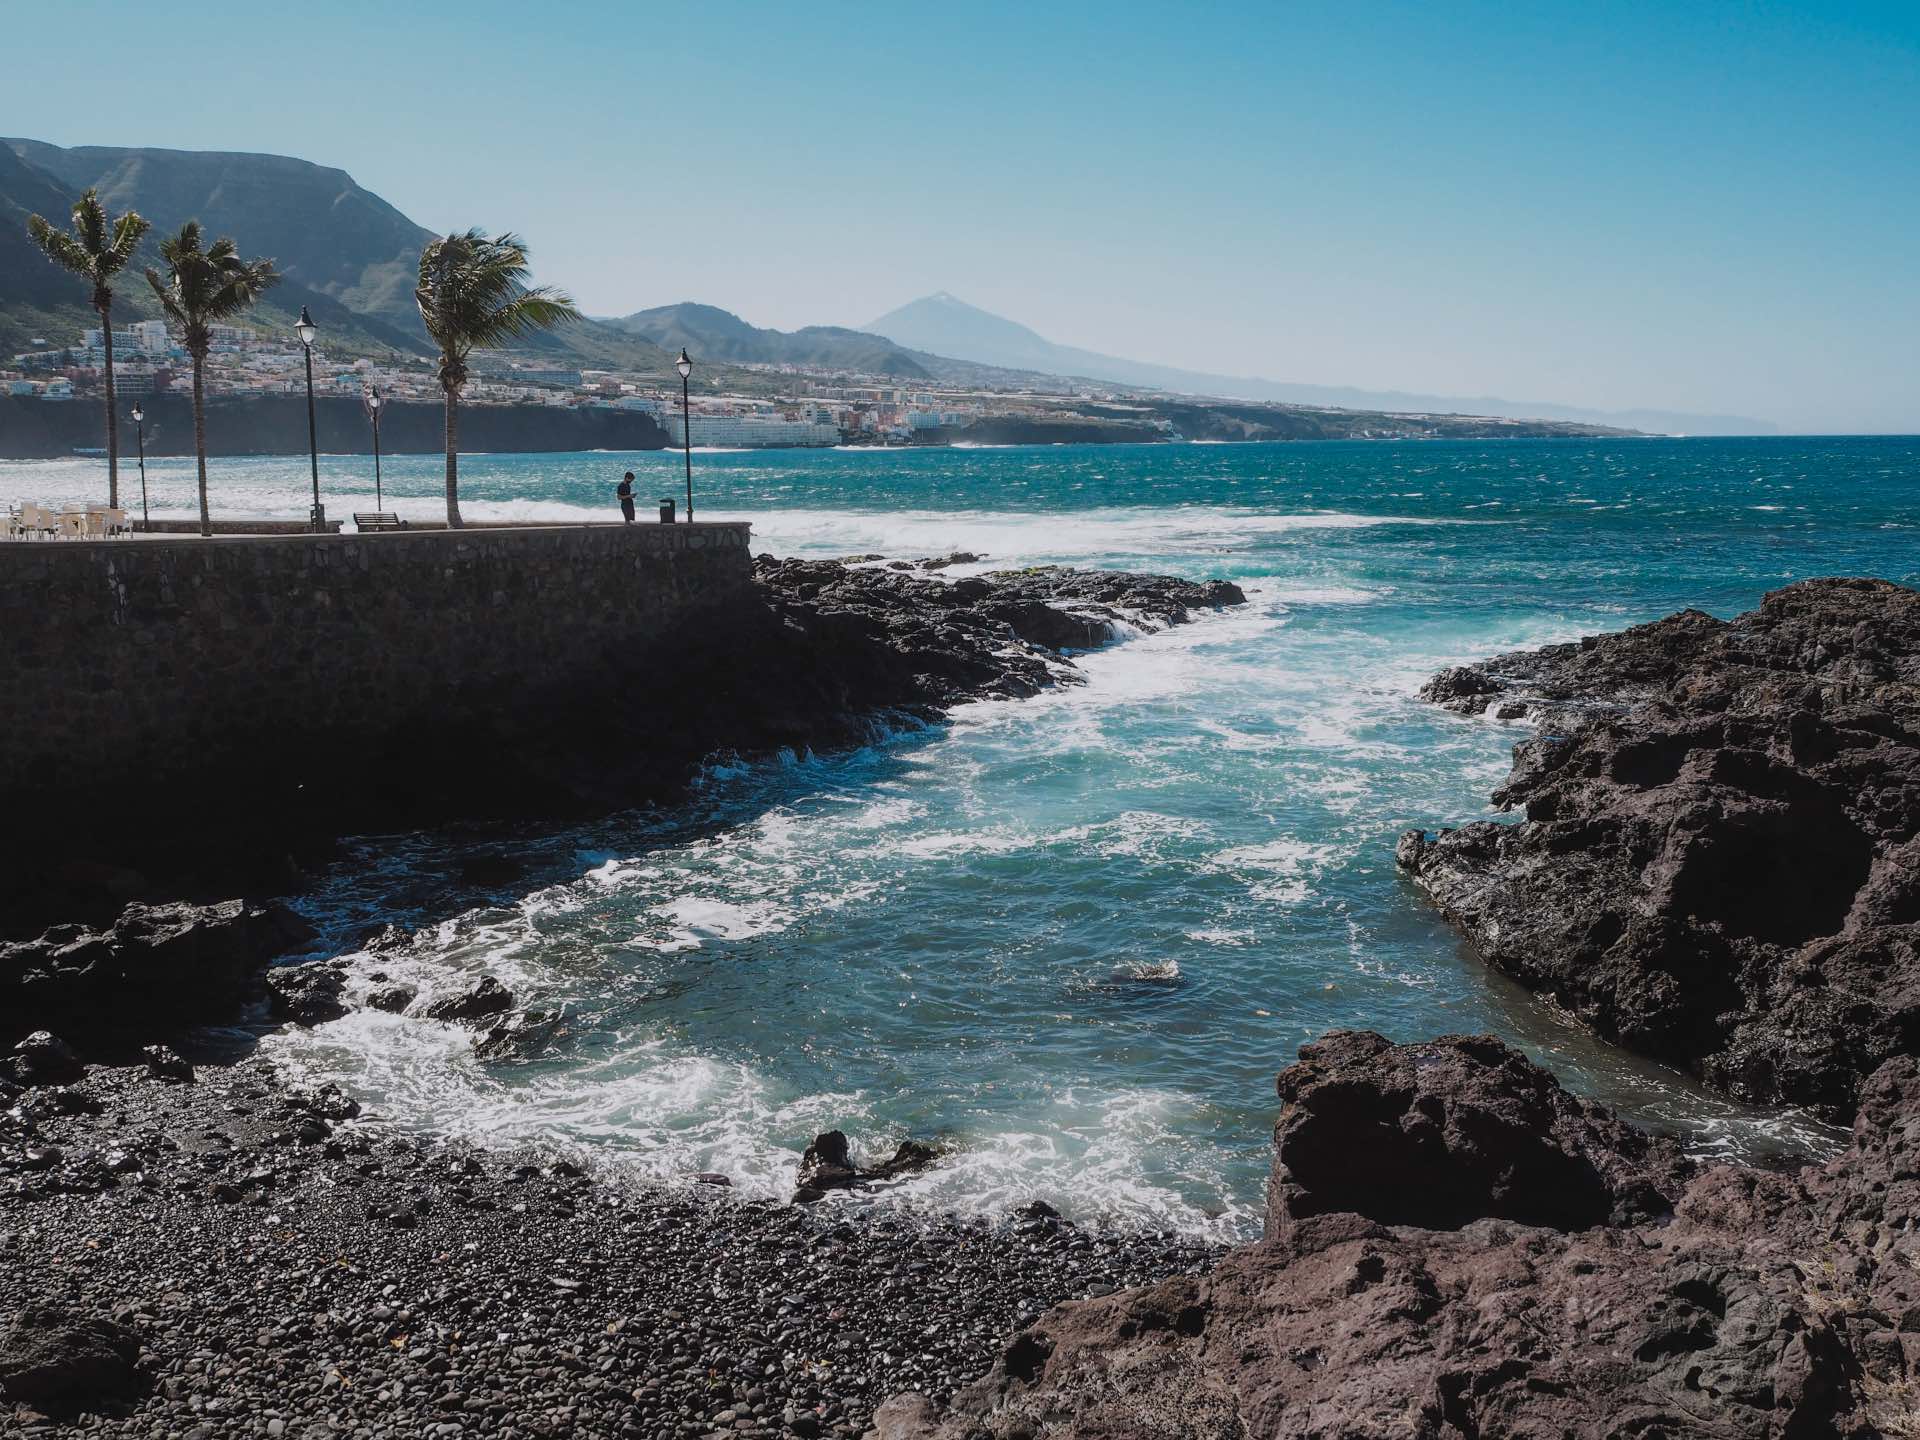 Alrededores de la Piscina Natural Punta del Hidalgo, uno de los mejores charcos donde bañarse en Tenerife